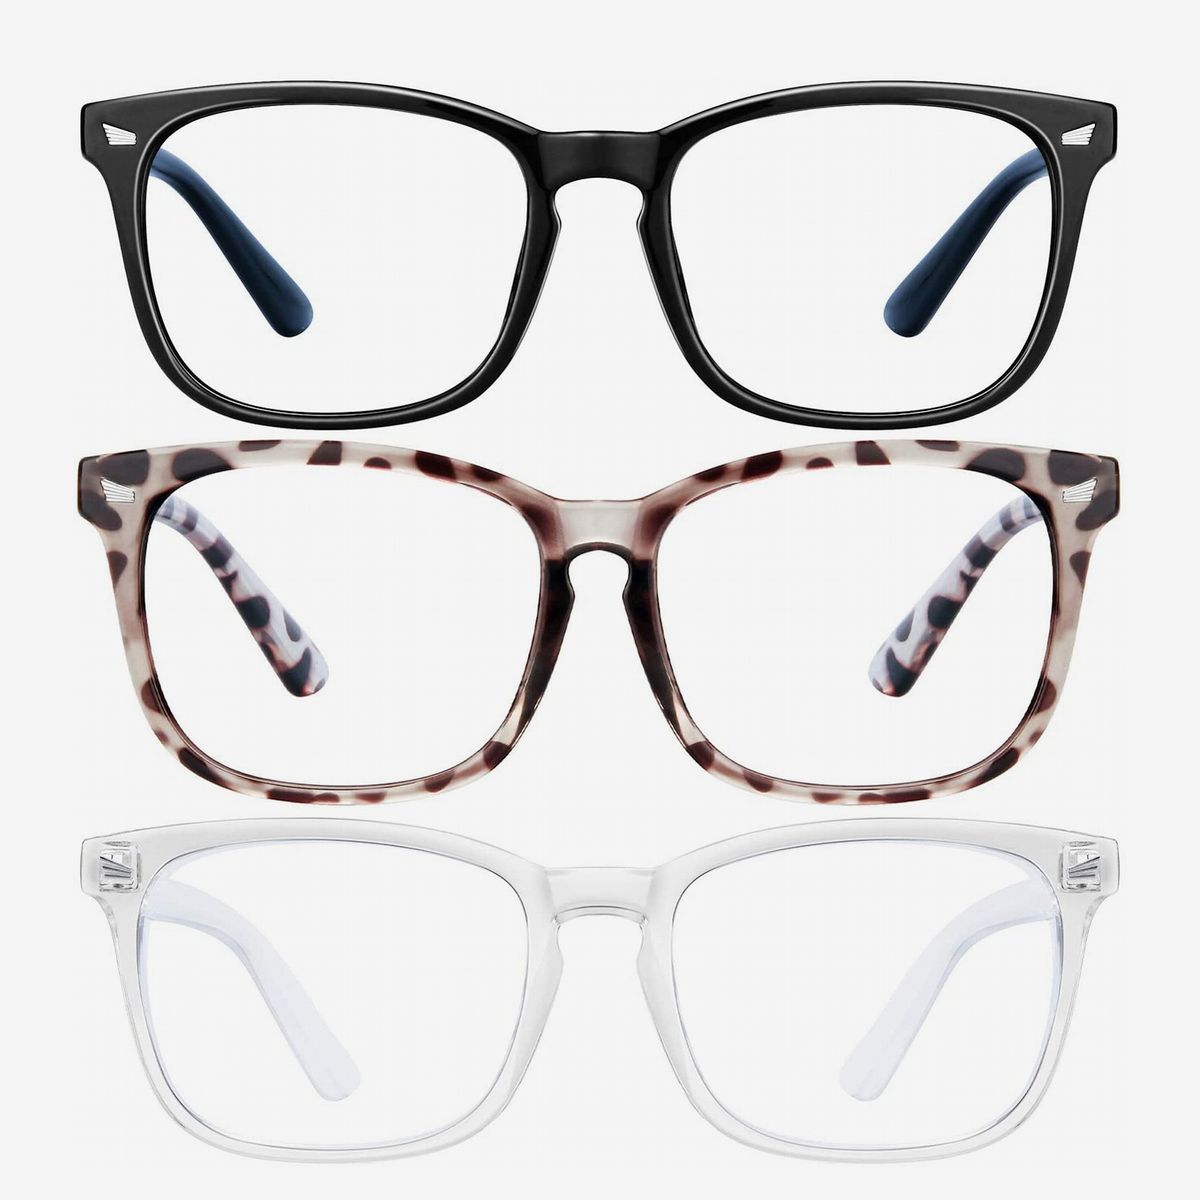 9 Best Blue-Light-Blocking Glasses 2021 